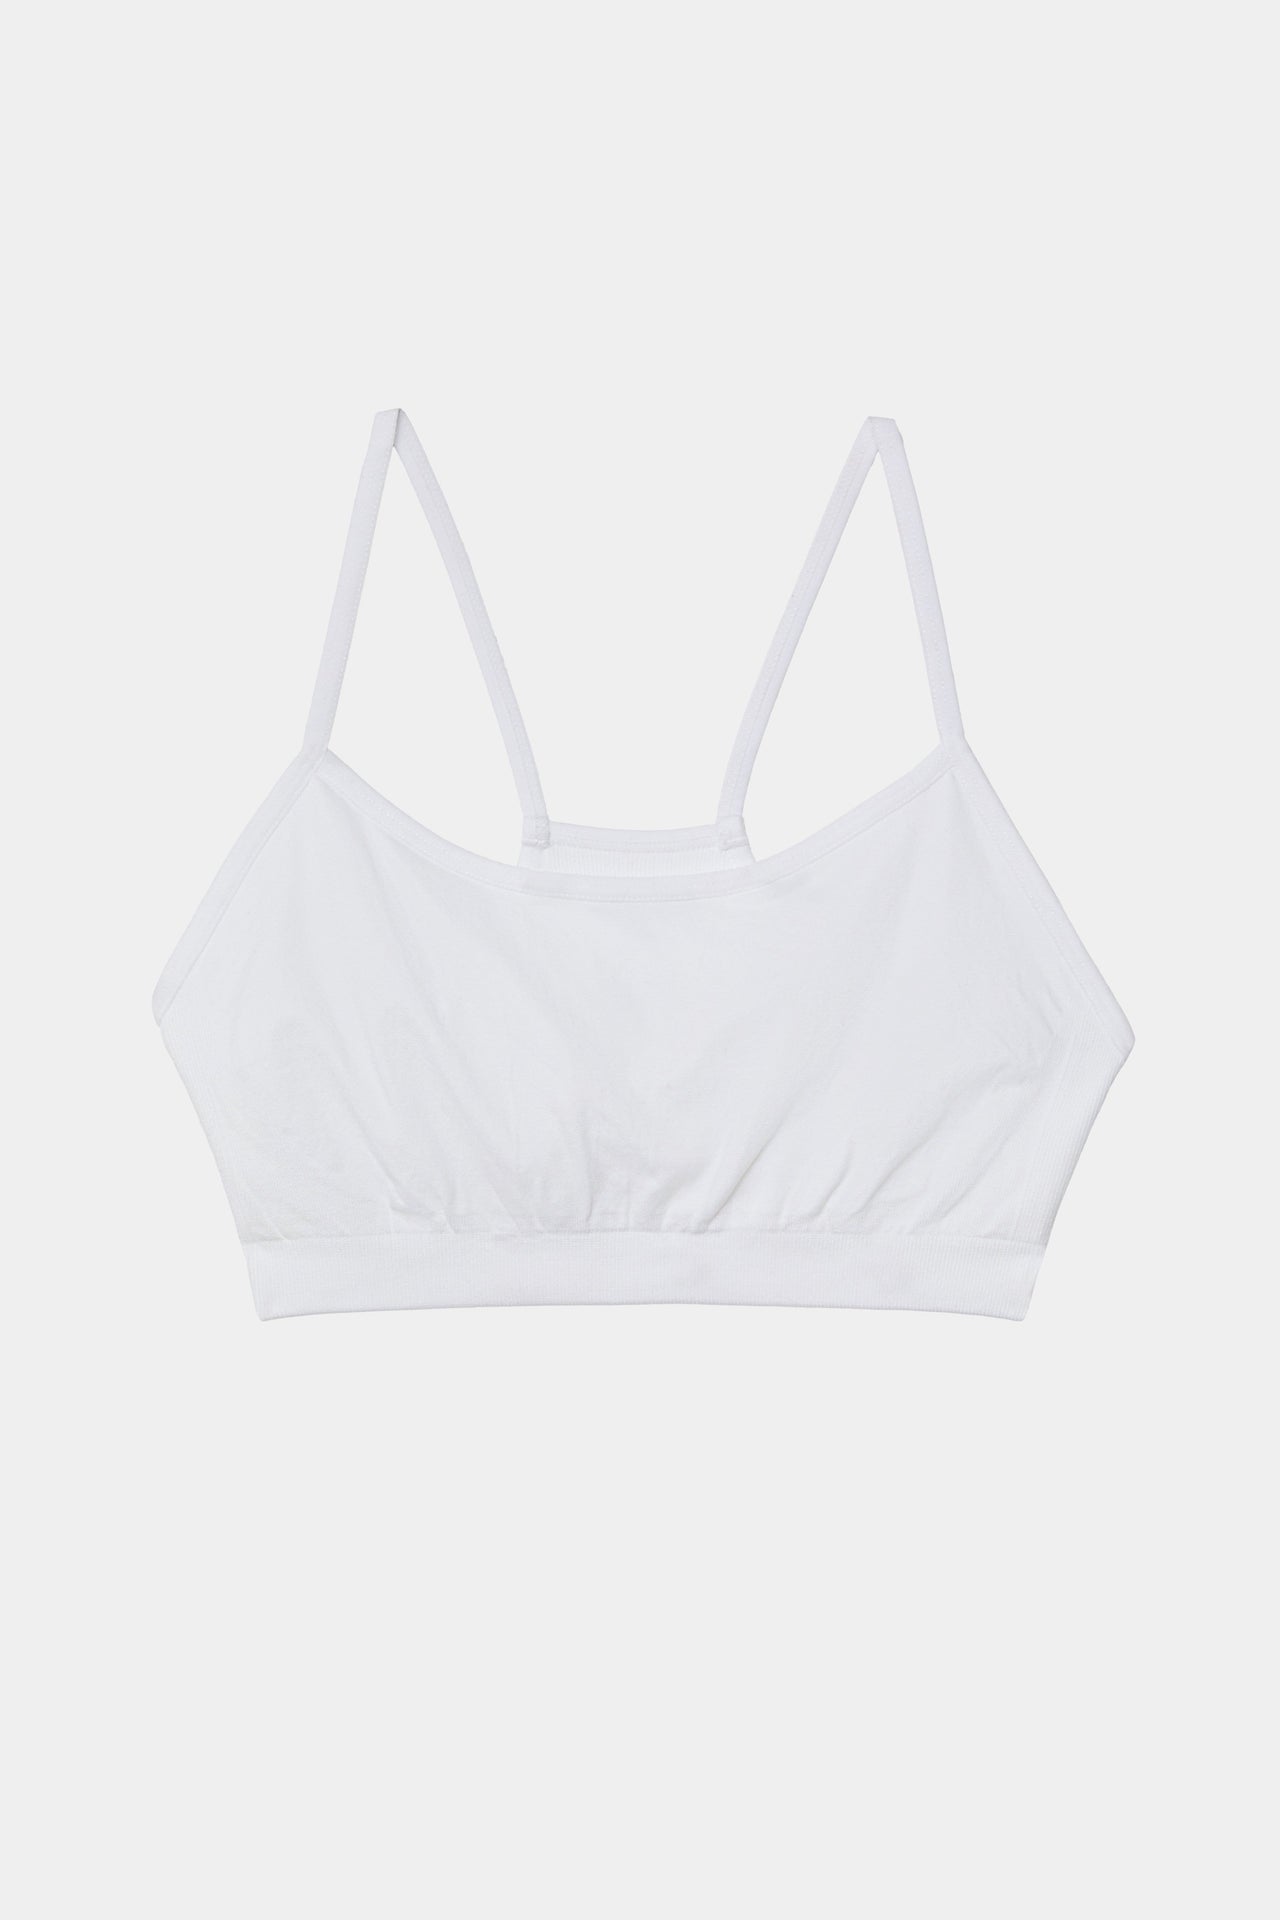 A white SPLITS59 Loren Bra Bundle sports bra on a white background.